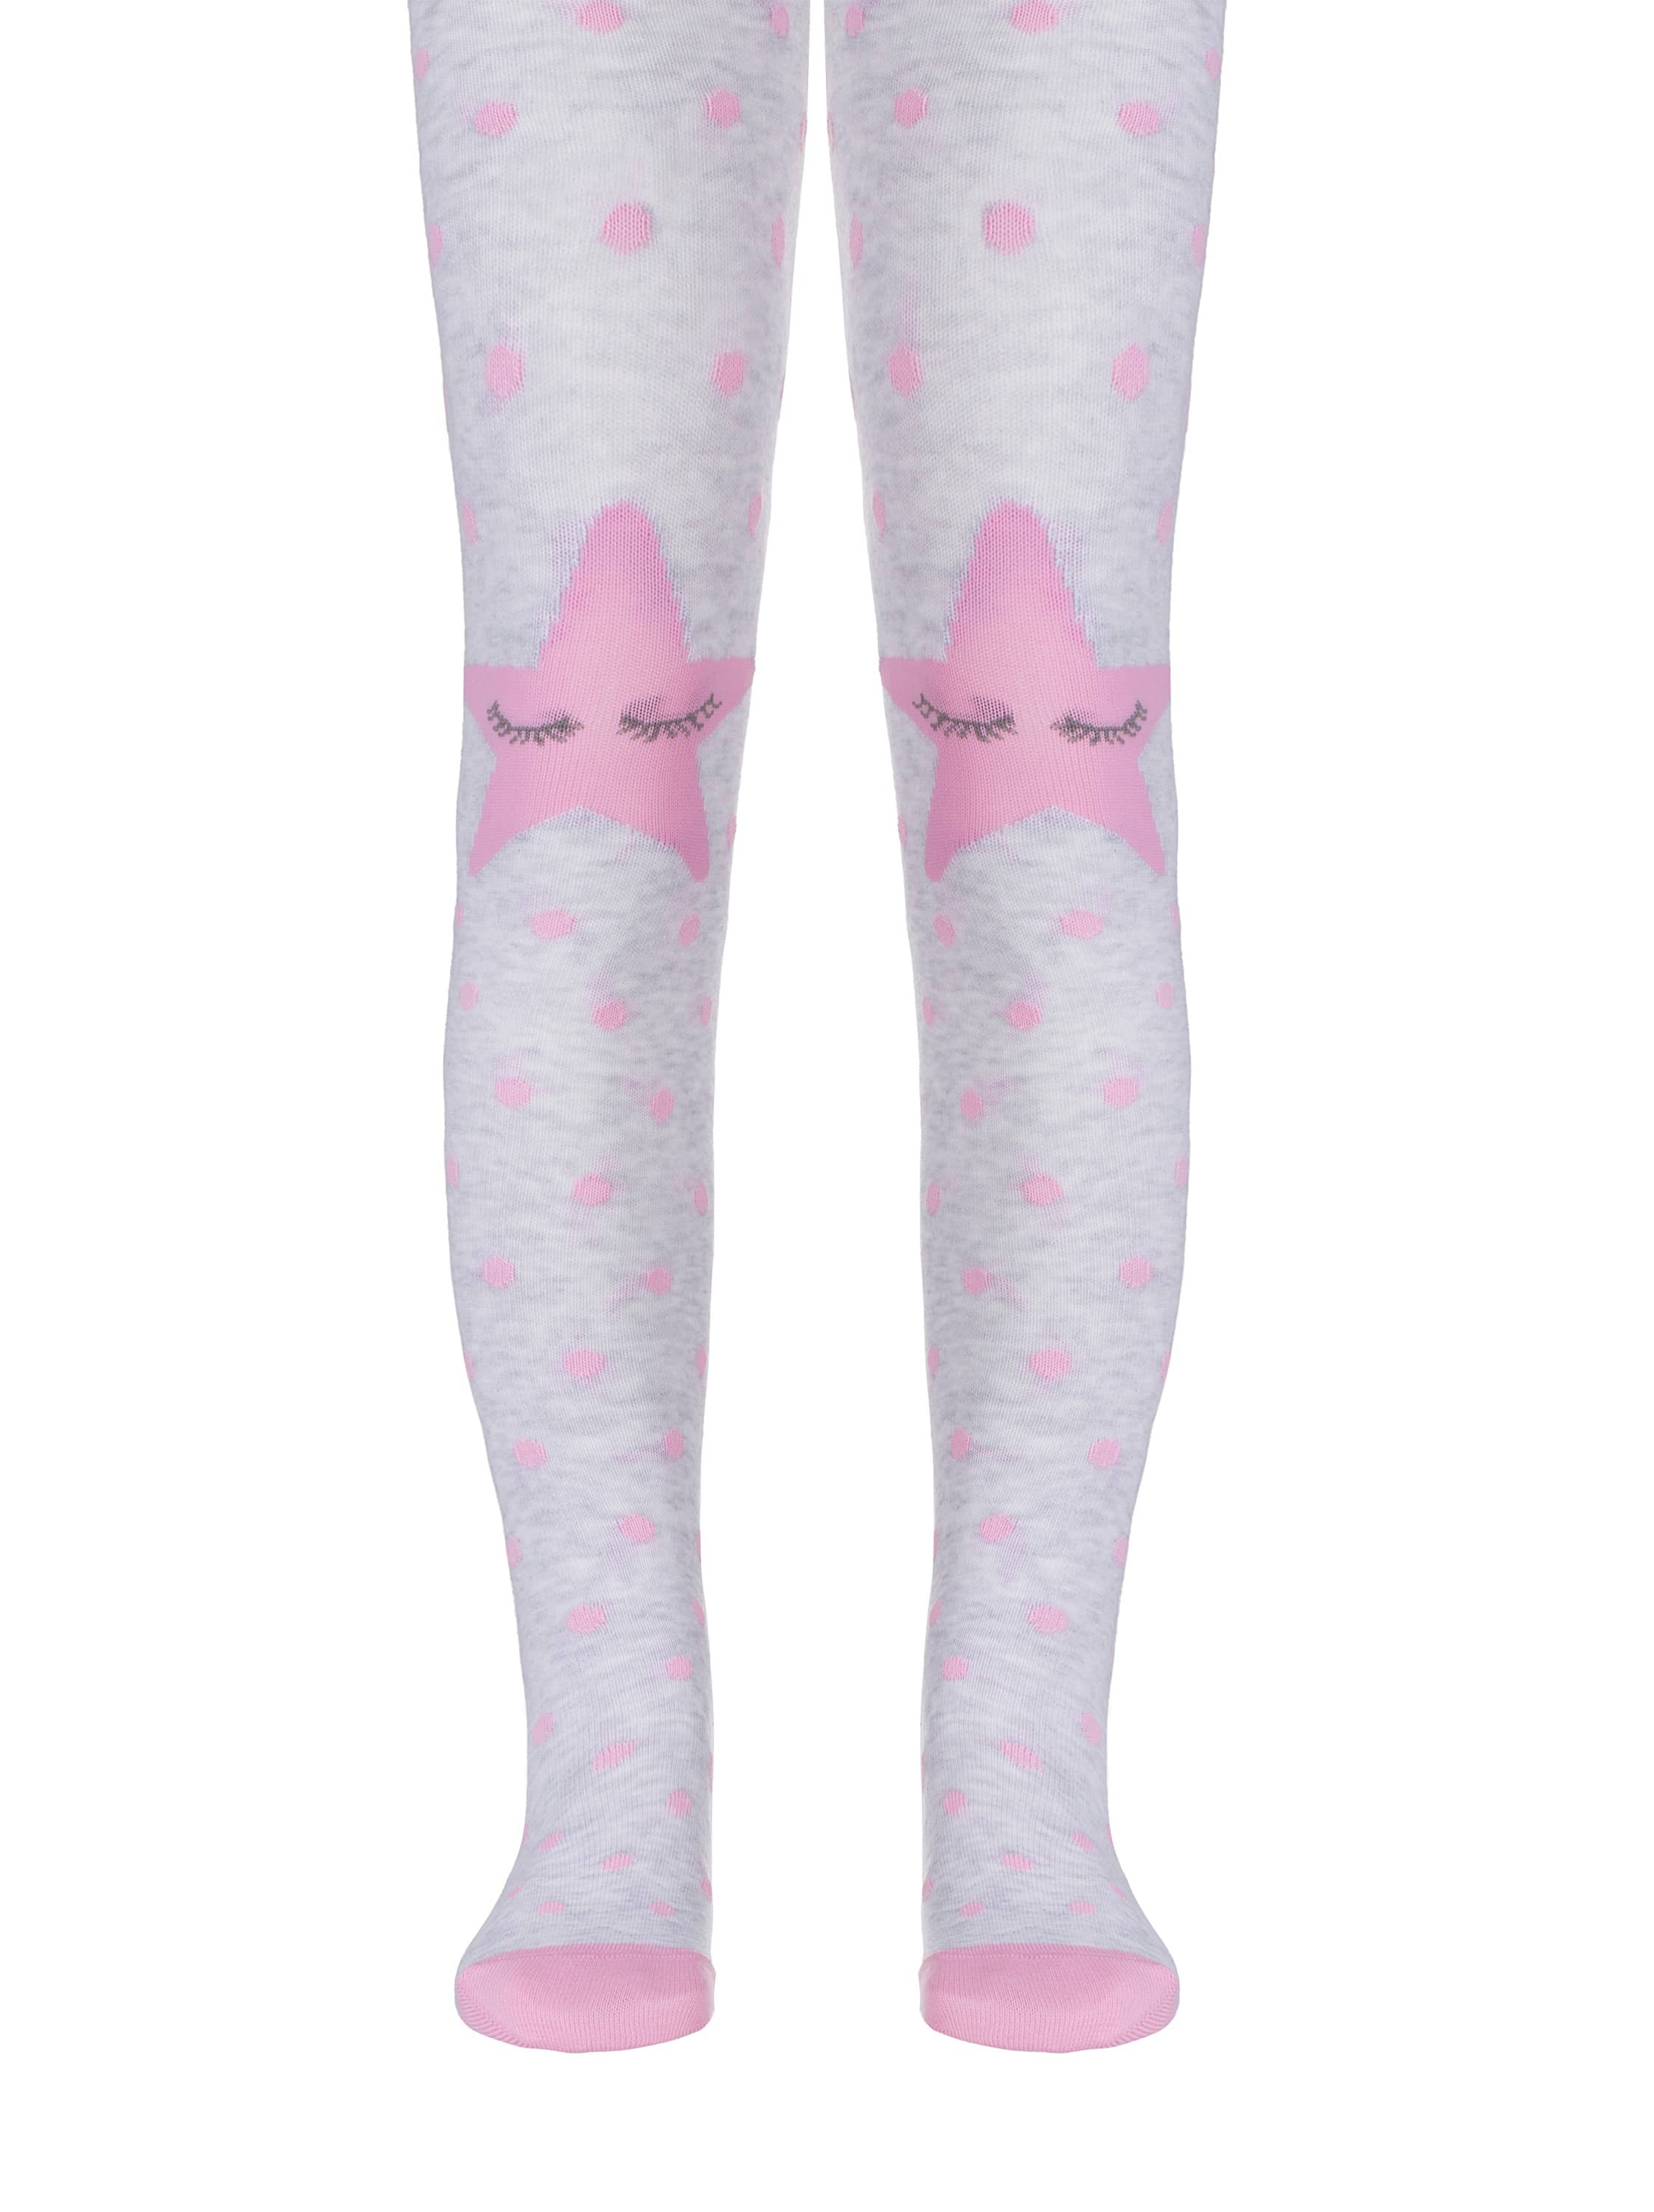 Bombažne otroške hlačne nogavice s pikčastim vzorcem po hlačnici ter zvezdicama na kolenih Conte Kids STAR v svetlo sivi barvi